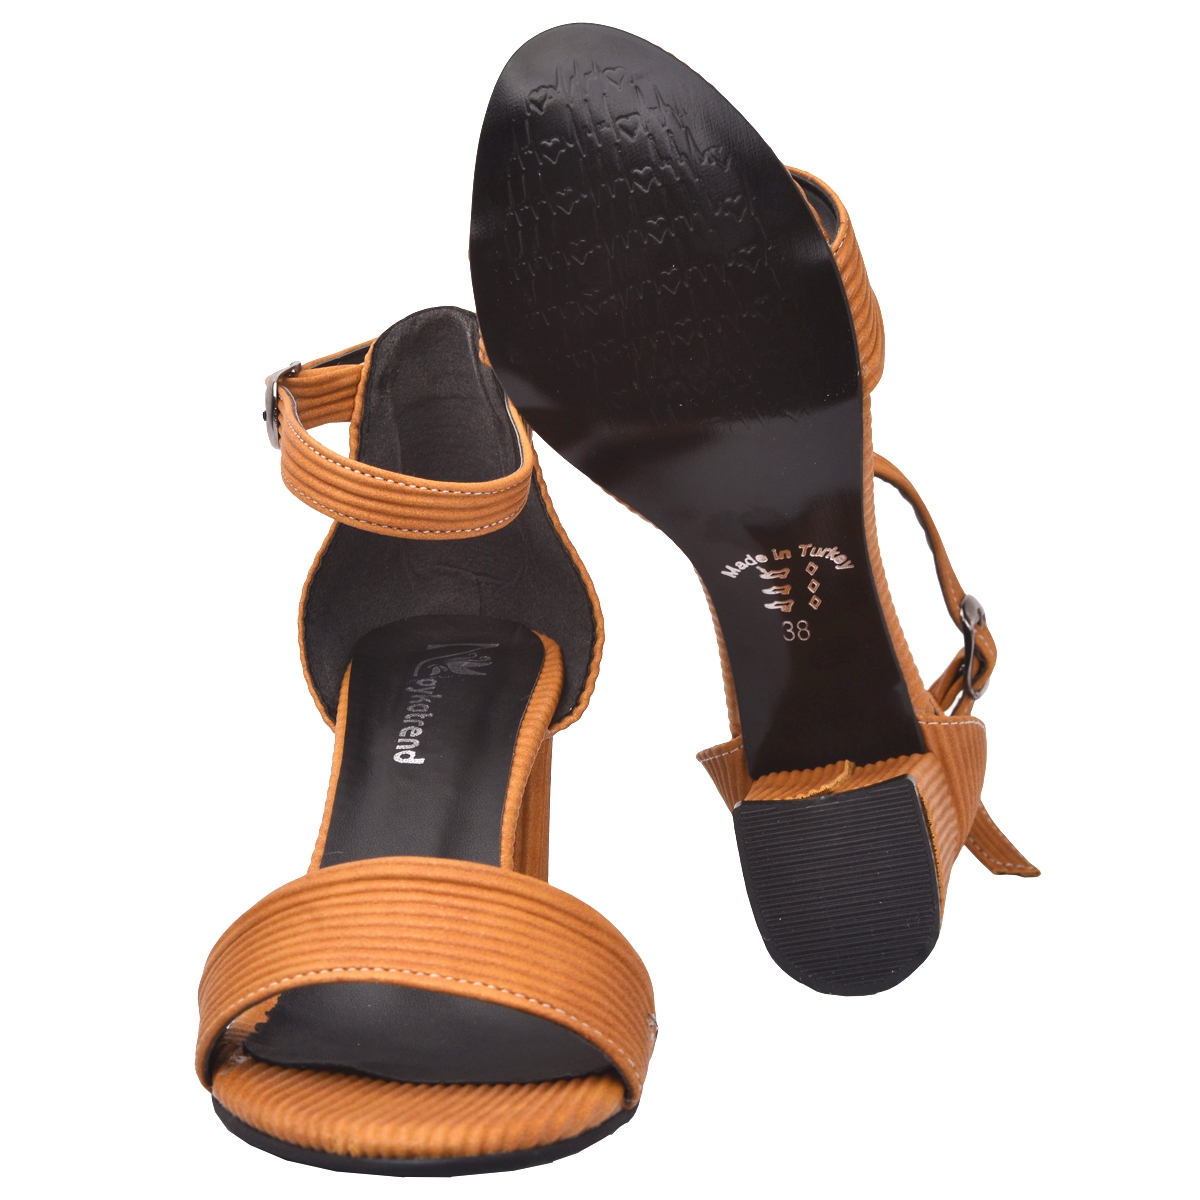 Flo 2013-05 Fitilli 7 Cm Topuk Bayan Sandalet Ayakkabı Hardal. 4